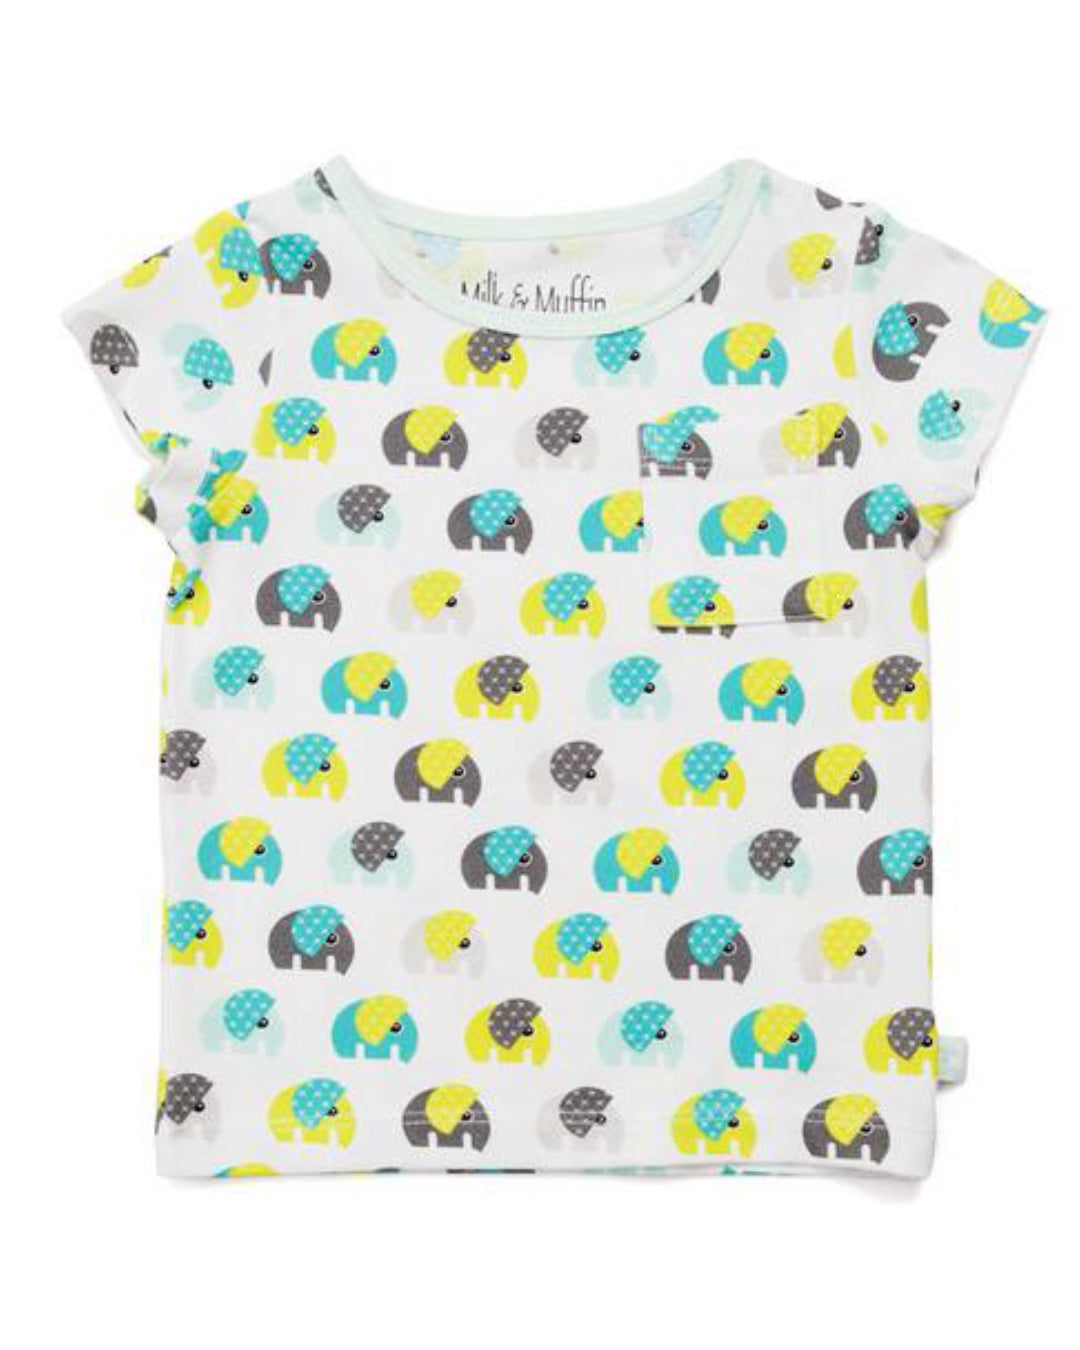 Weißes T-Shirt für Kinder aus Biobaumwolle mit Elefanten Print in türkis